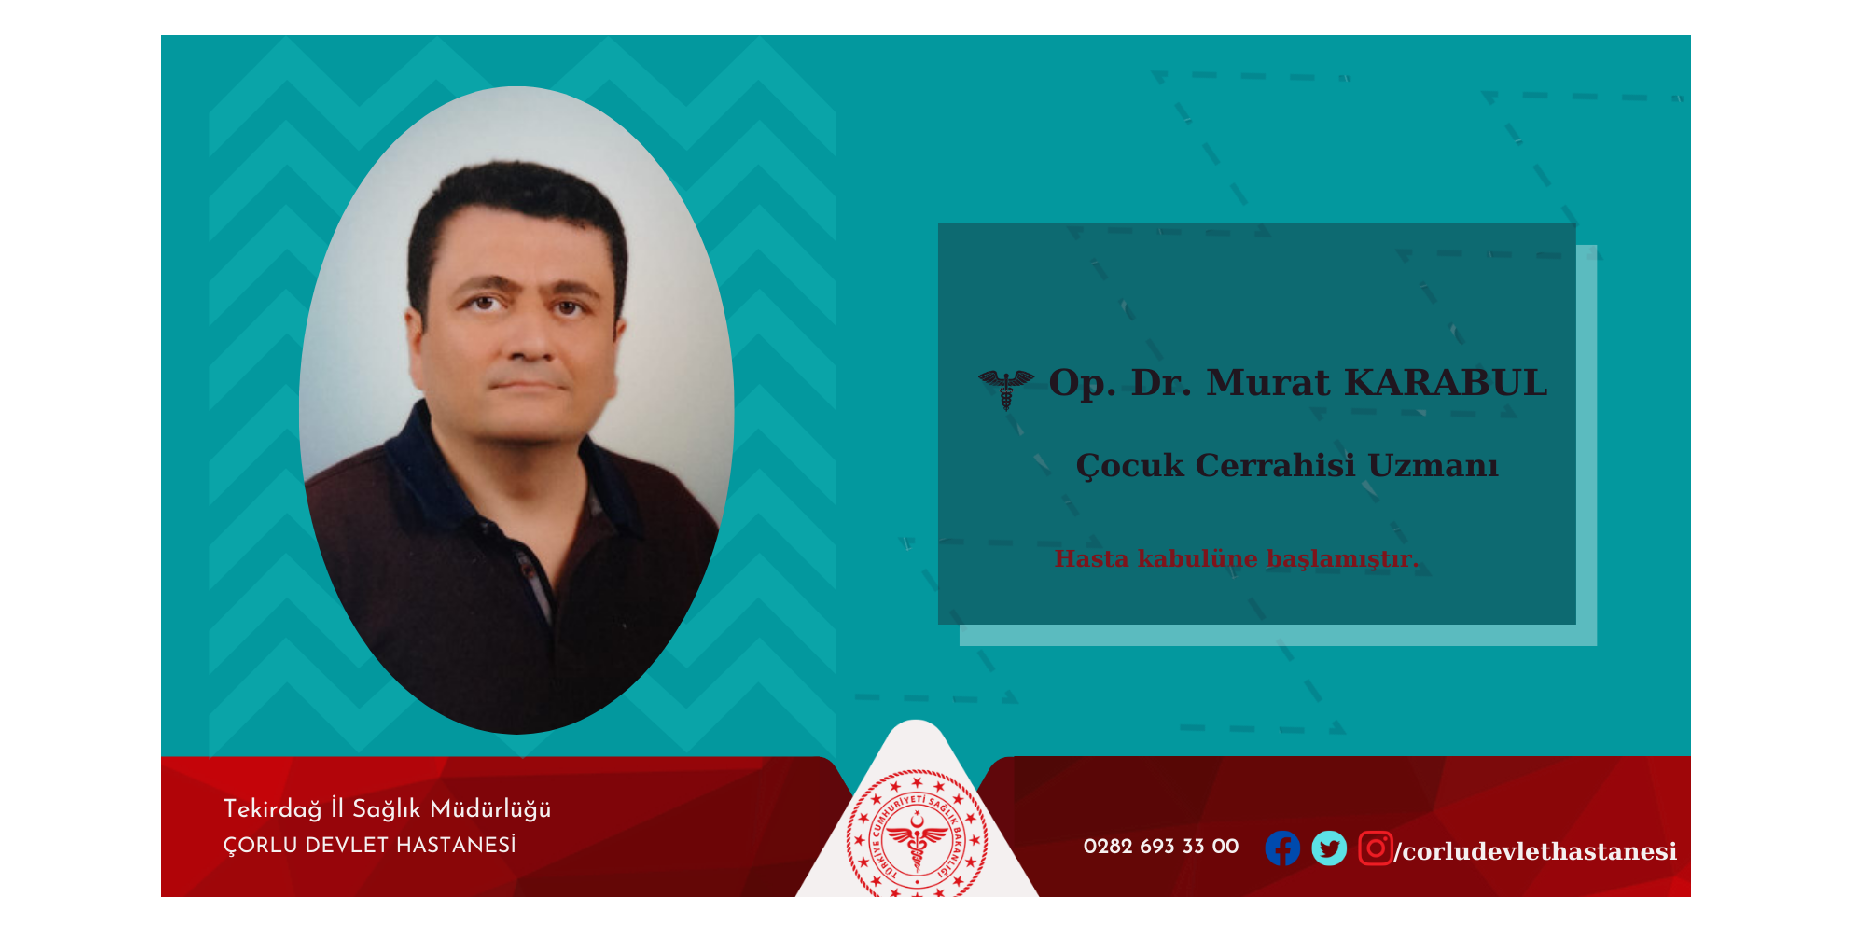 Çocuk Cerrahisi Uzmanı Op. Dr. Murat KARABUL hasta kabulüne başlamıştır. 